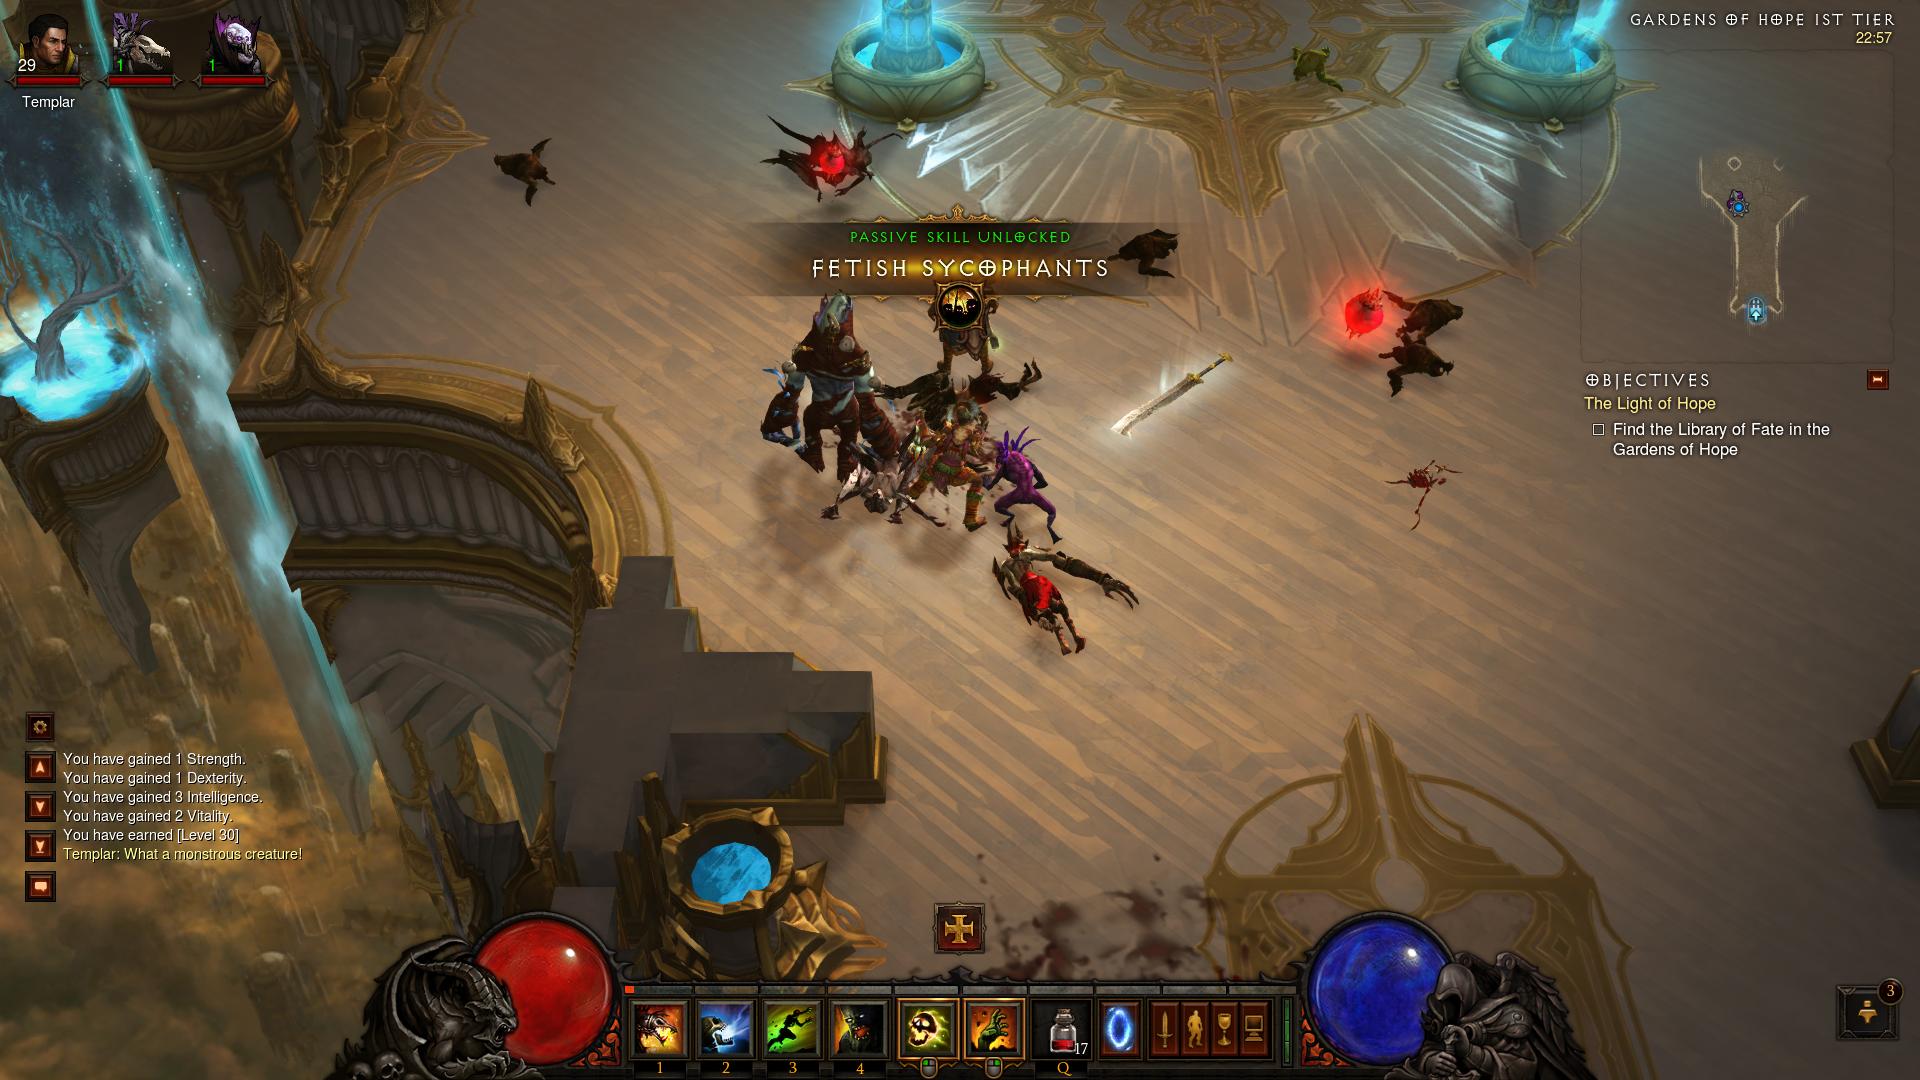 Diablo 3 Gardens of Hope 1st Tier d3 screenshot